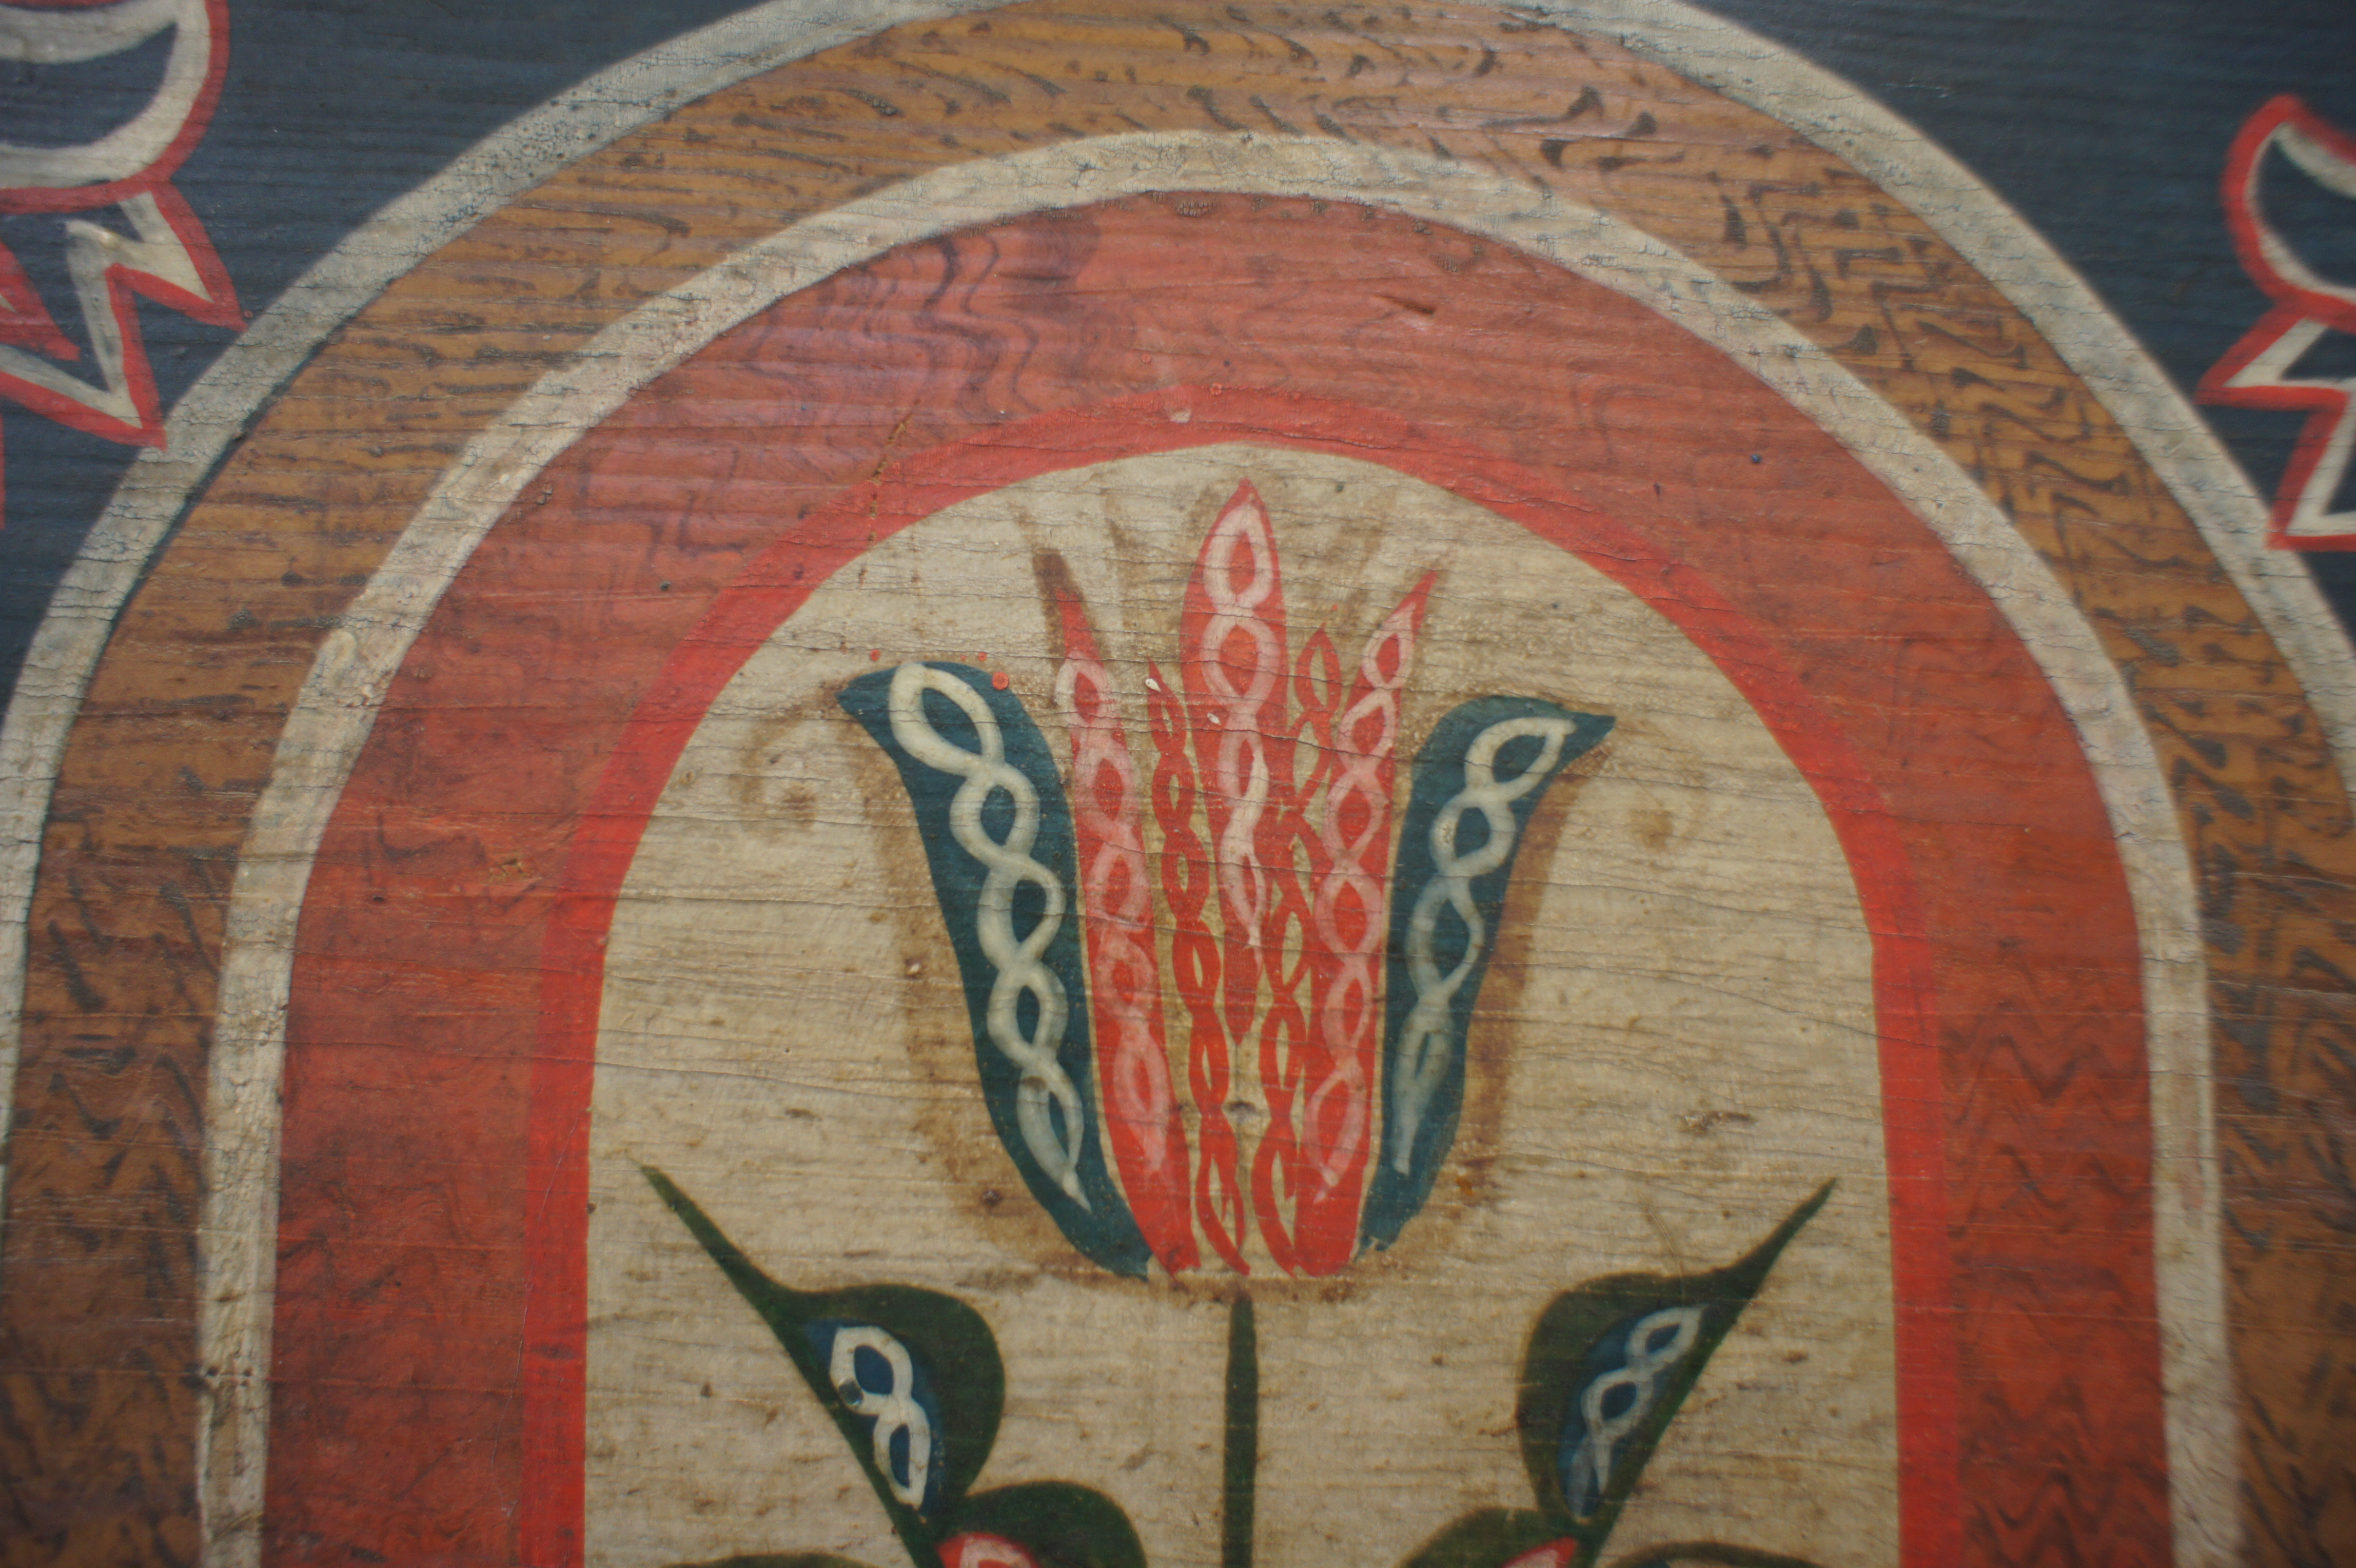 Fotoaufnahme einer gemalten Tulpe, welche sich auf einen Holzmöbel, vermutlich einen Schrank, befindet. Um die Tulpe herum wurden mehrere Rundbögen gemalt. 